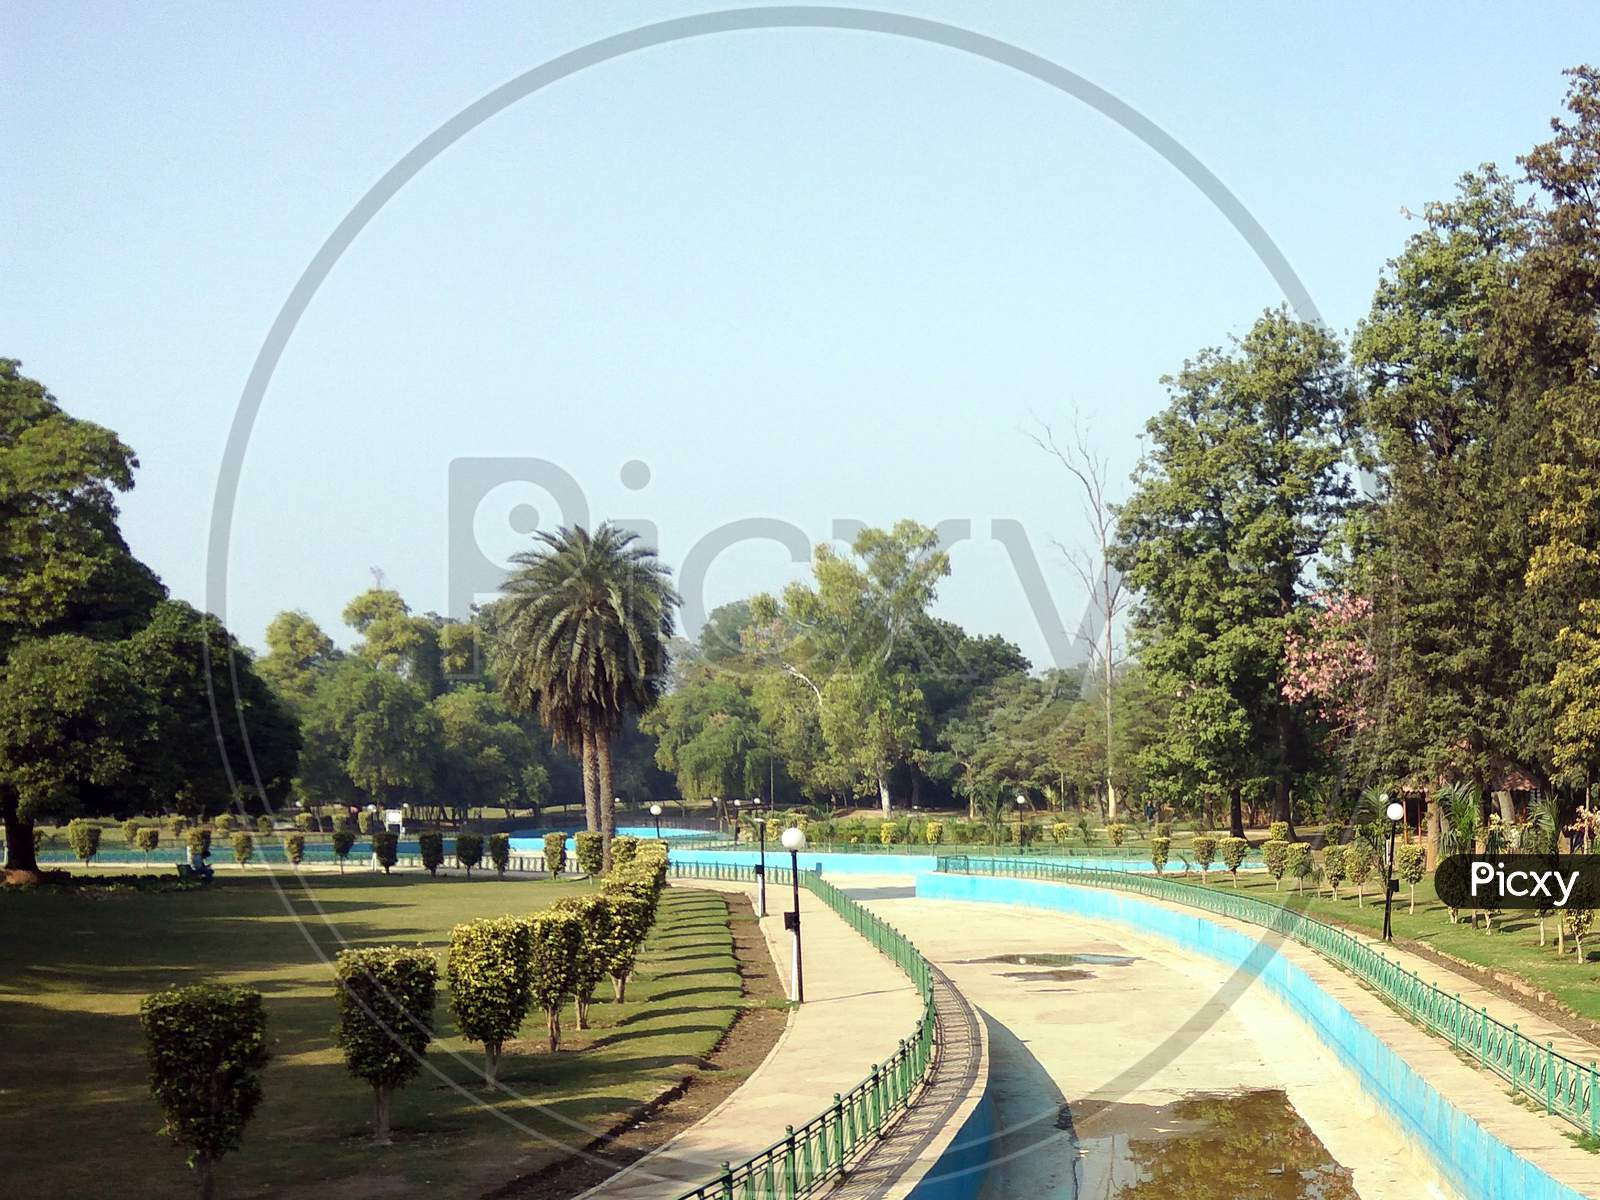 View of canal at Sanjay Lake and Park in Laxmibai Nagar, Delhi